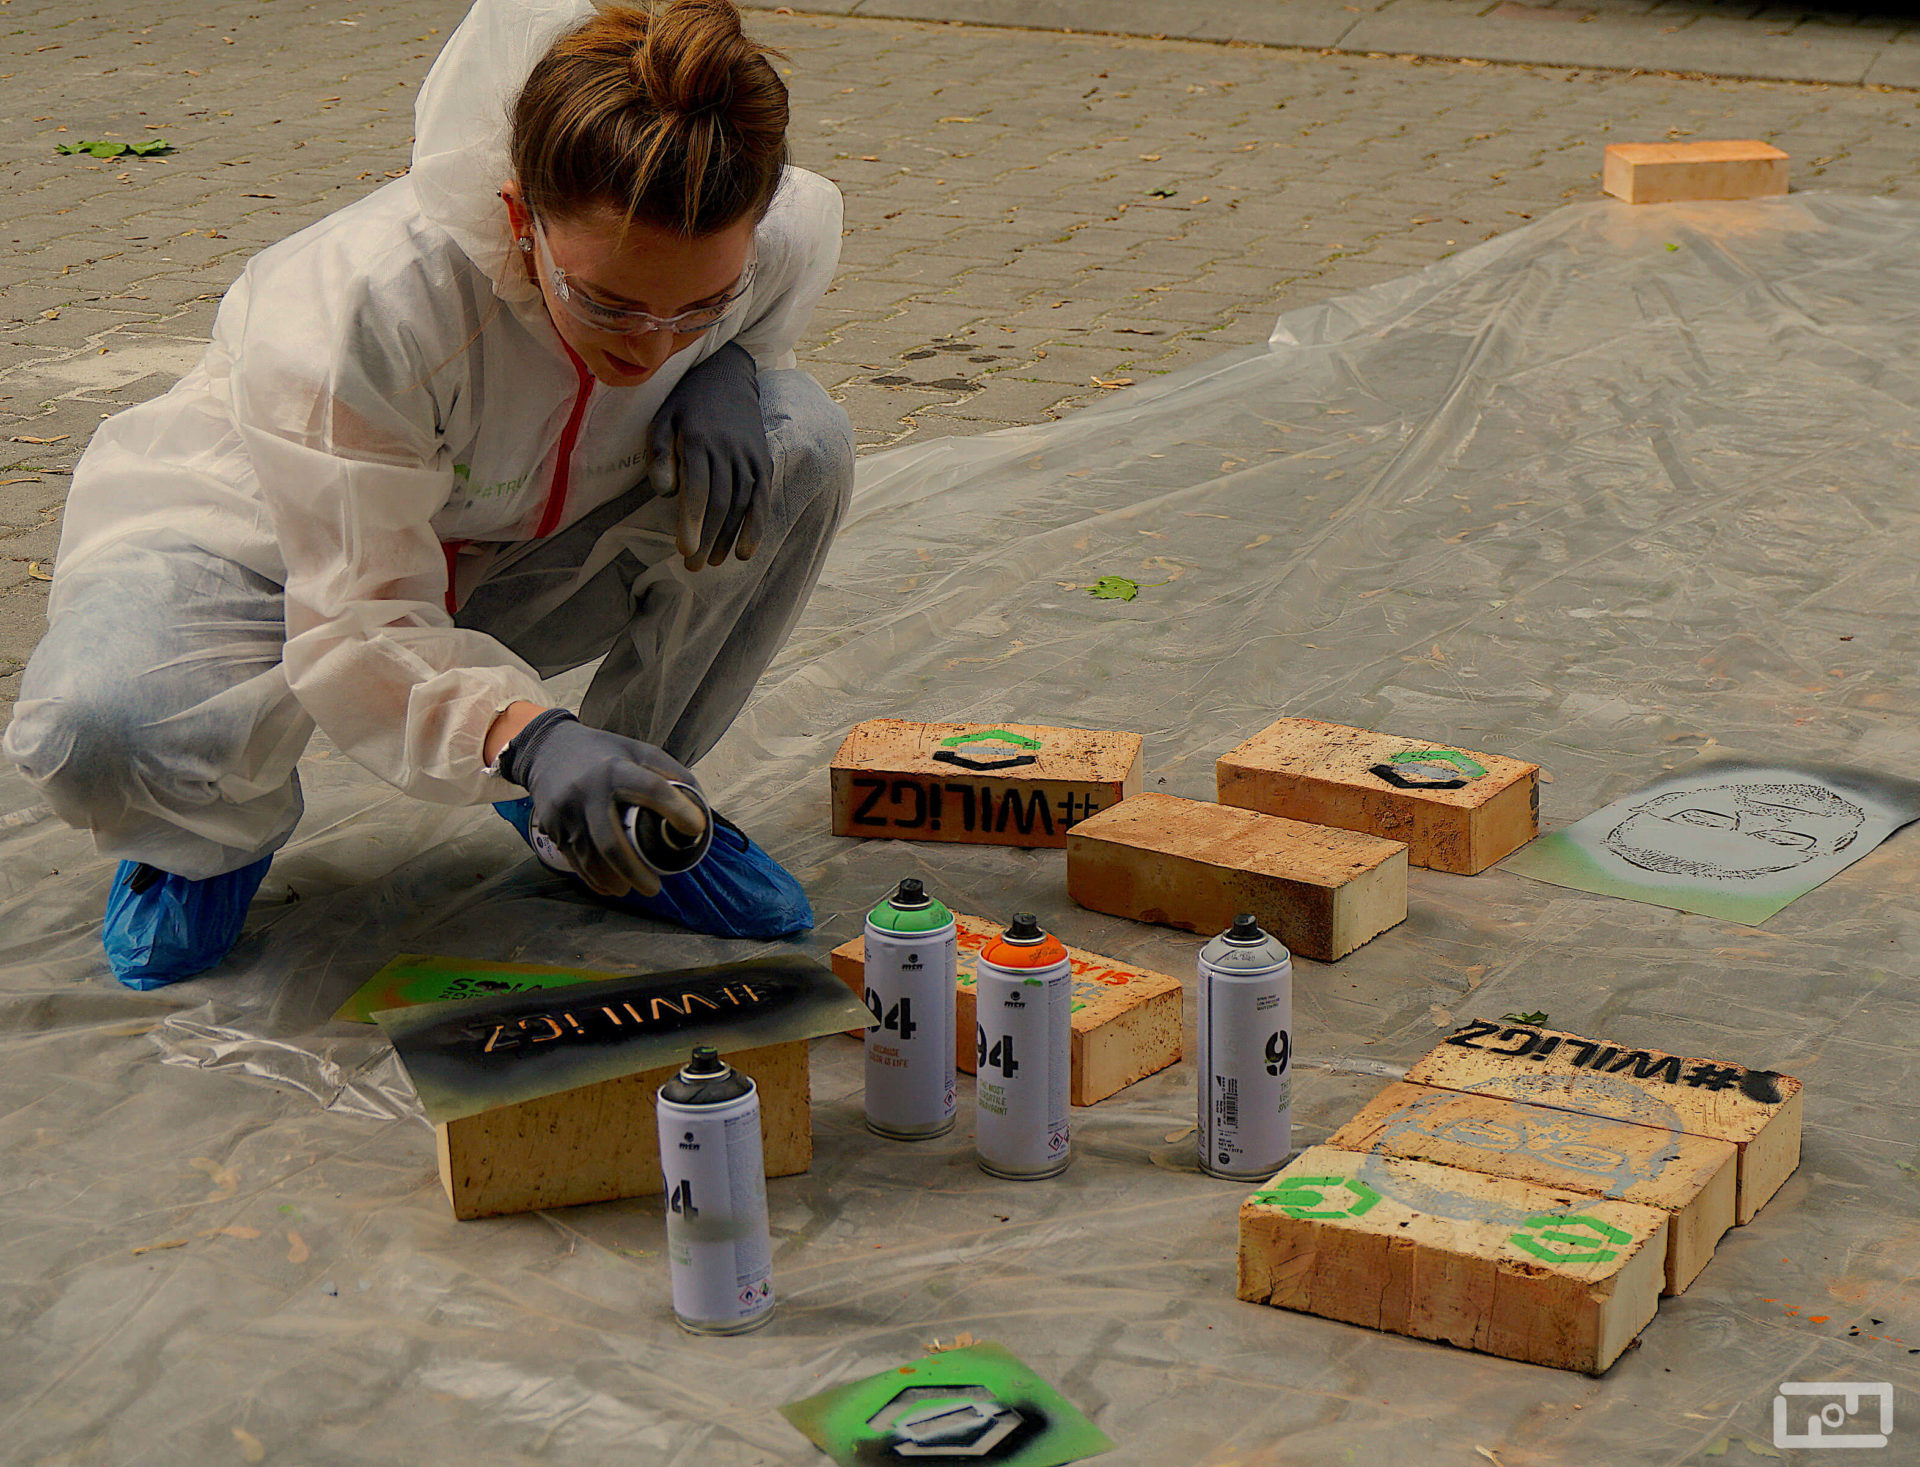 Uśmiechnięta młoda kobieta ubrana w strój malarski i gogle ochronne przy użyciu sprayu oraz szablonu maluje cegły. Przed nią na foli malarskiej leżą już pomalowane cegły.